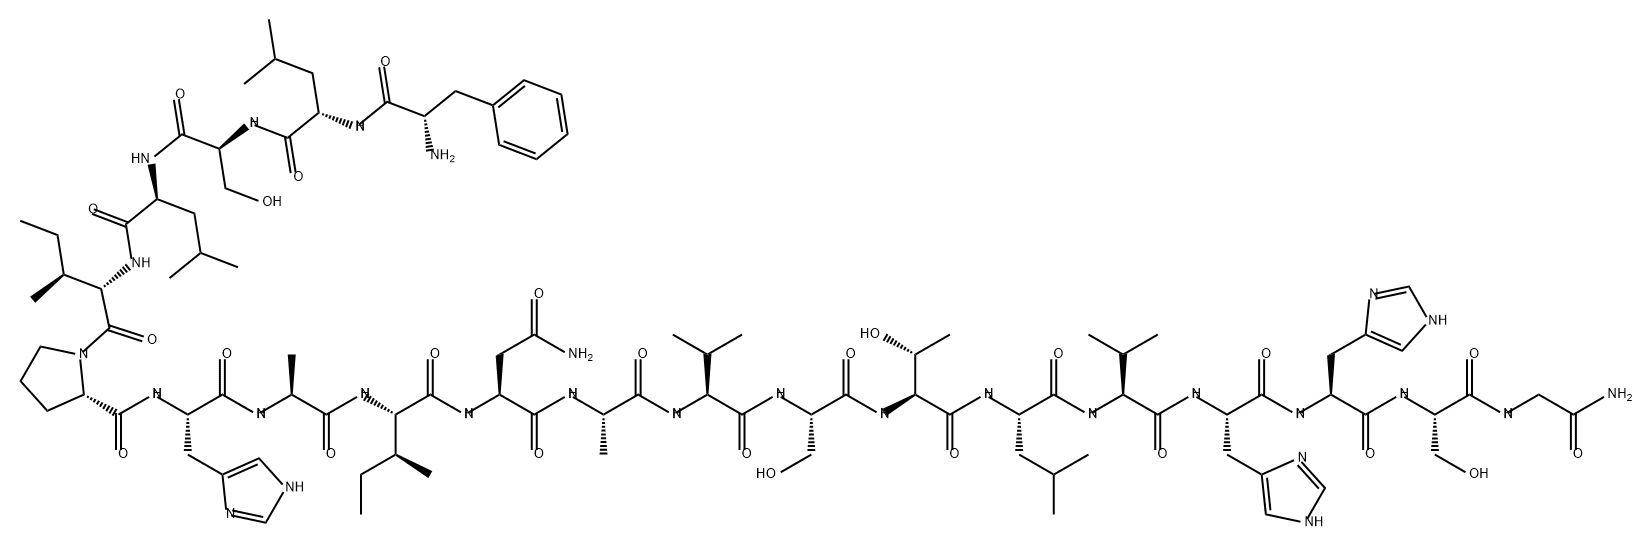 Phylloseptin-O1|